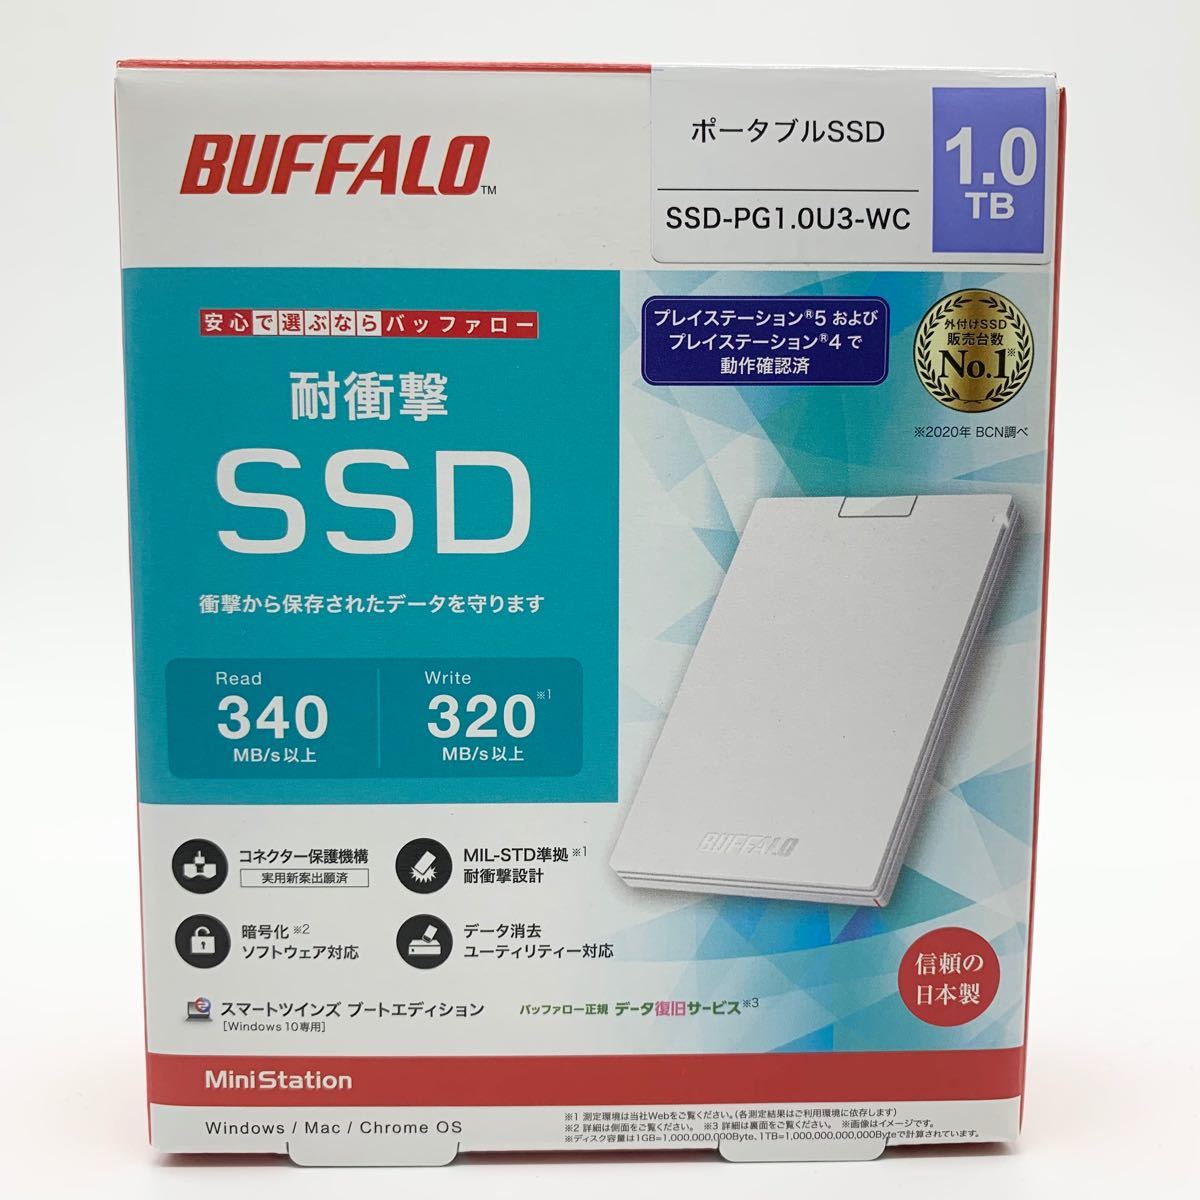 ポータブルSSD 1.0TB 耐振動・耐衝撃 USB3.2(Gen1)対応 バッファロー